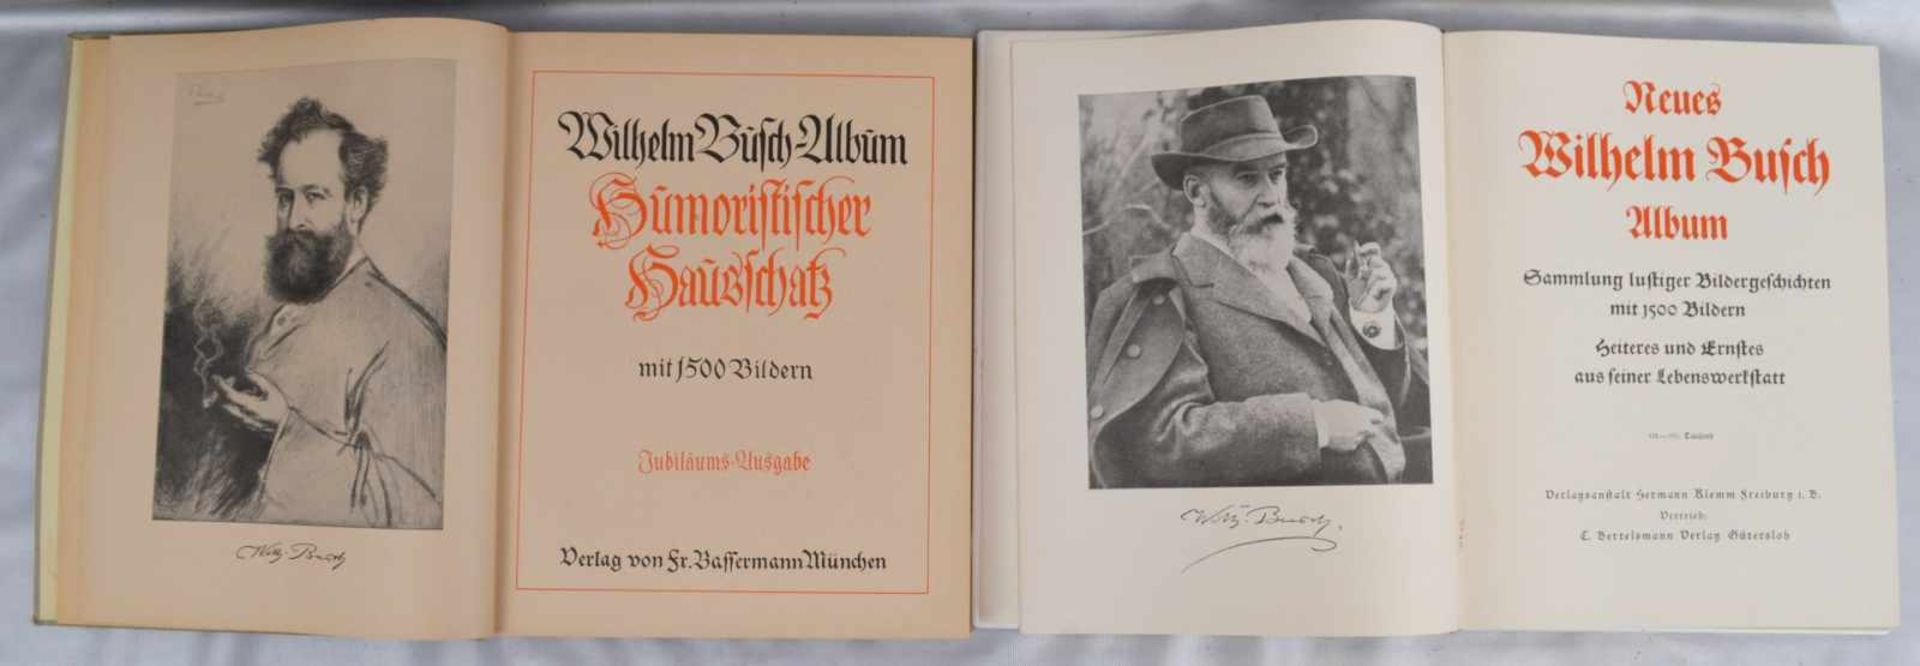 Zwei Wilhelm Busch-AlbenNeuauflage, mit zahlreichen Bildern